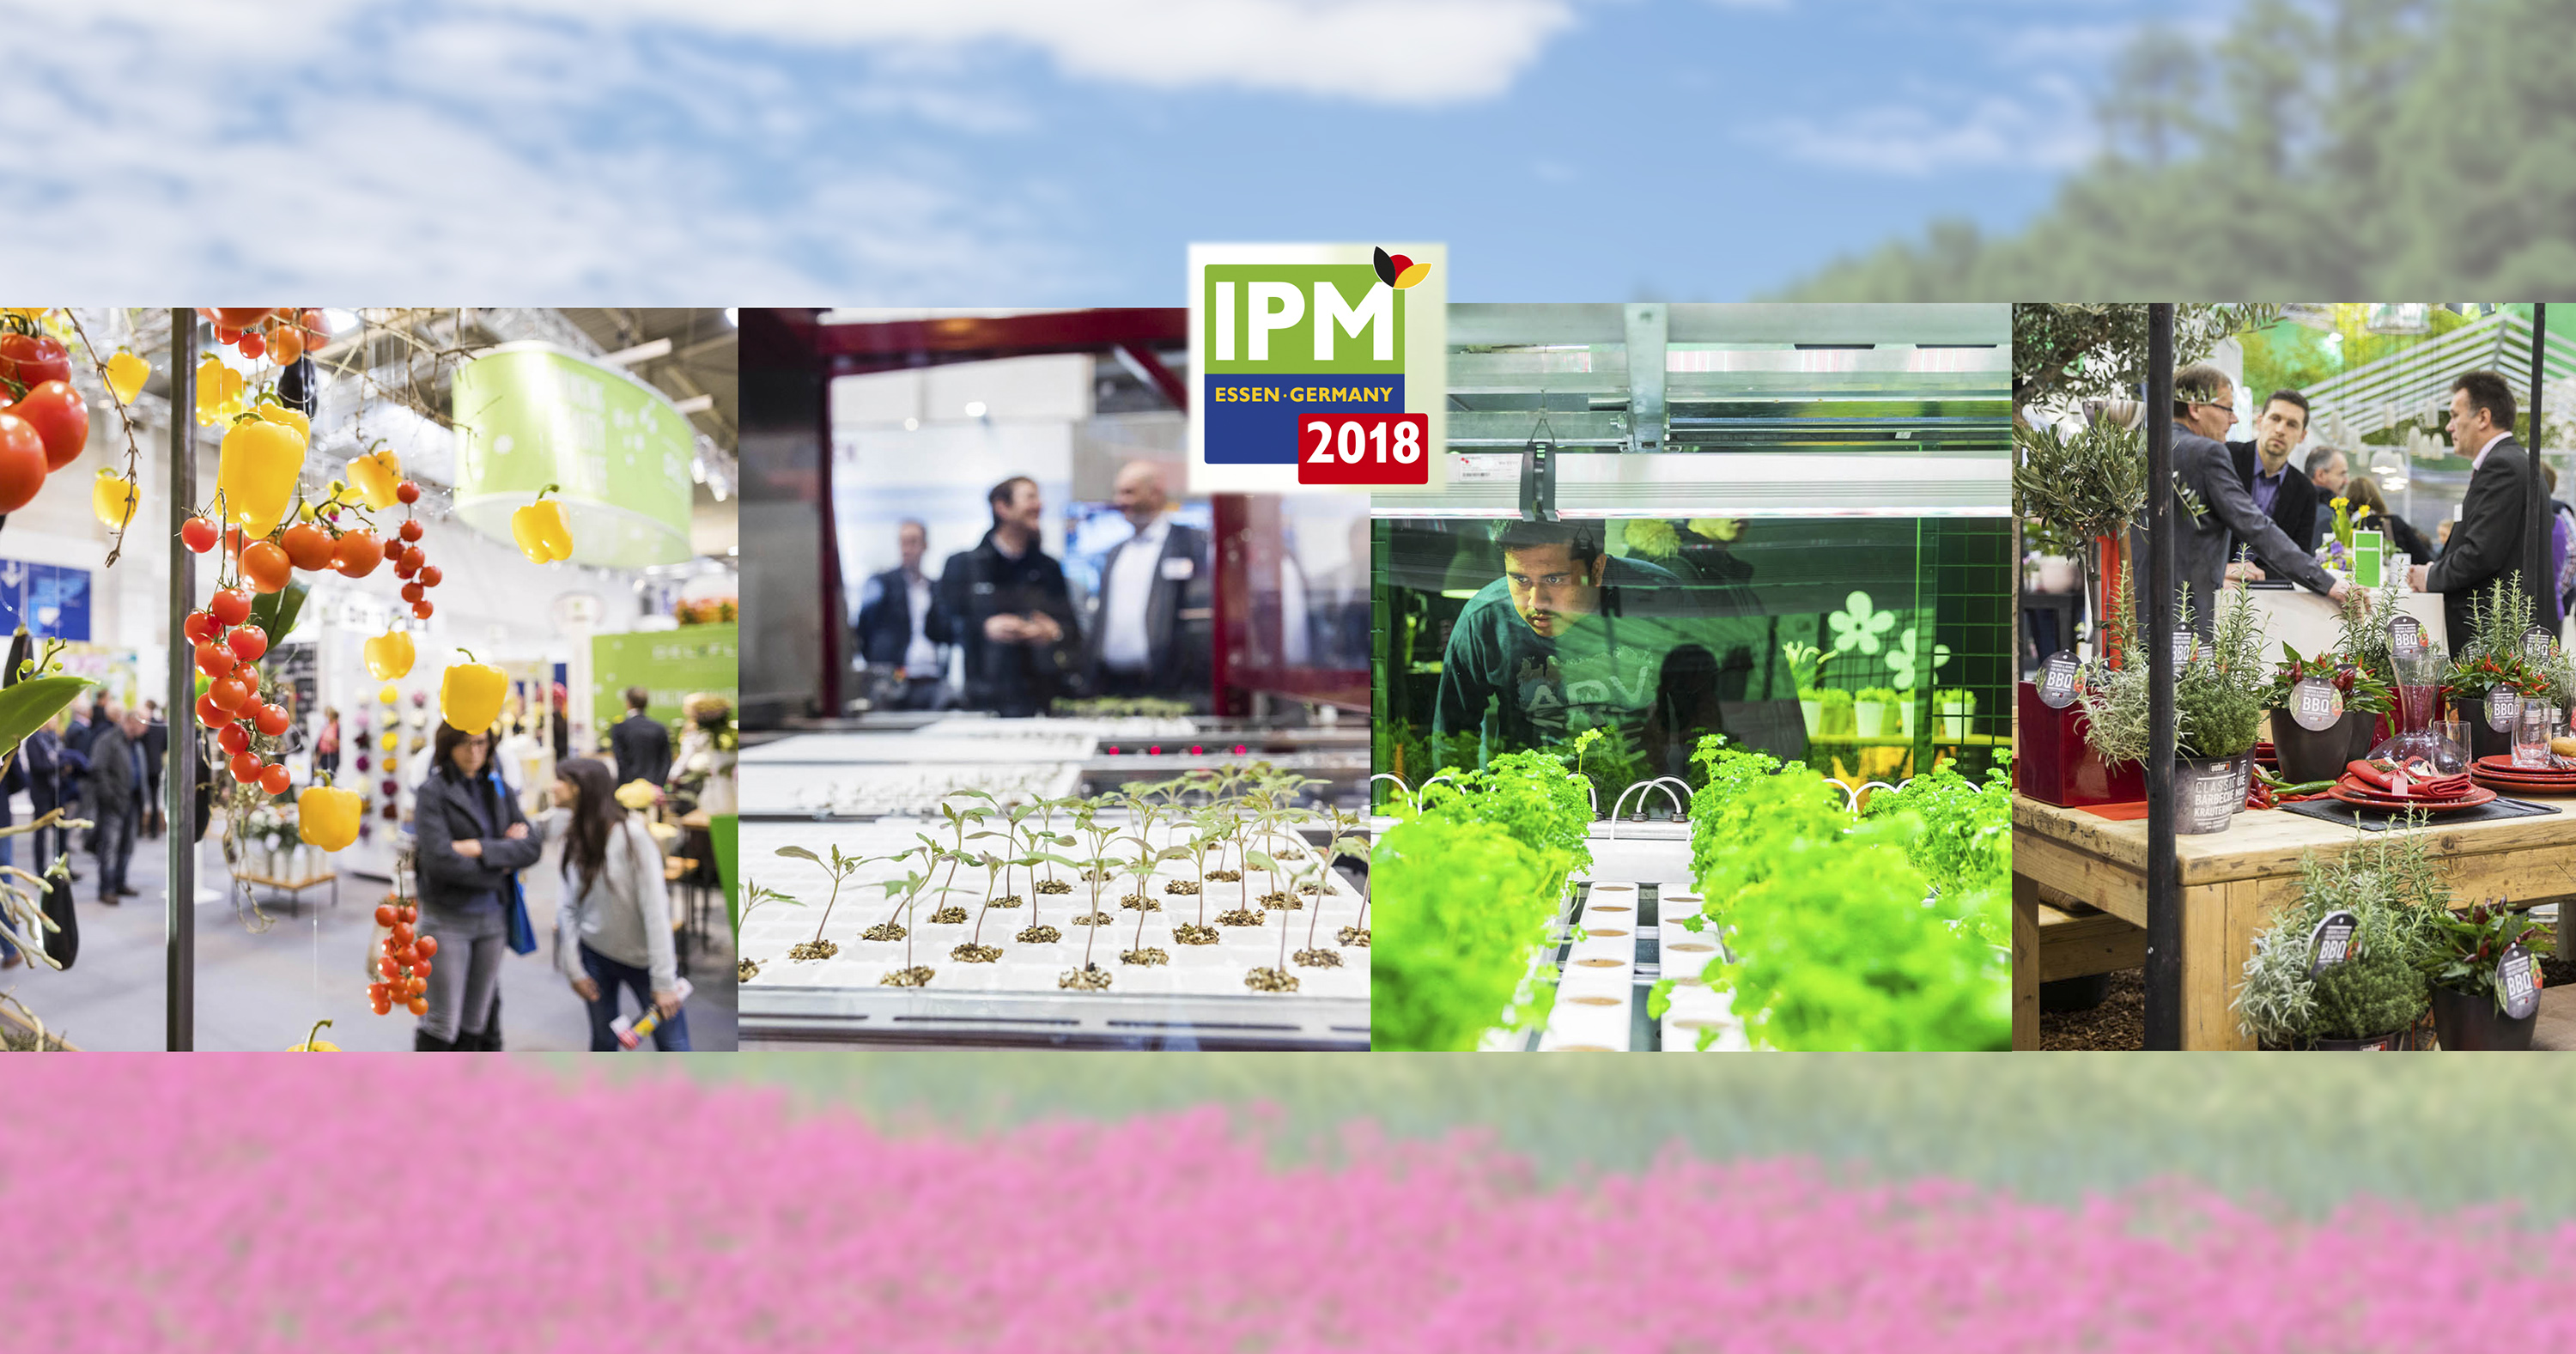 IPM ESSEN 2018 - мировые продукты садоводства и инновации